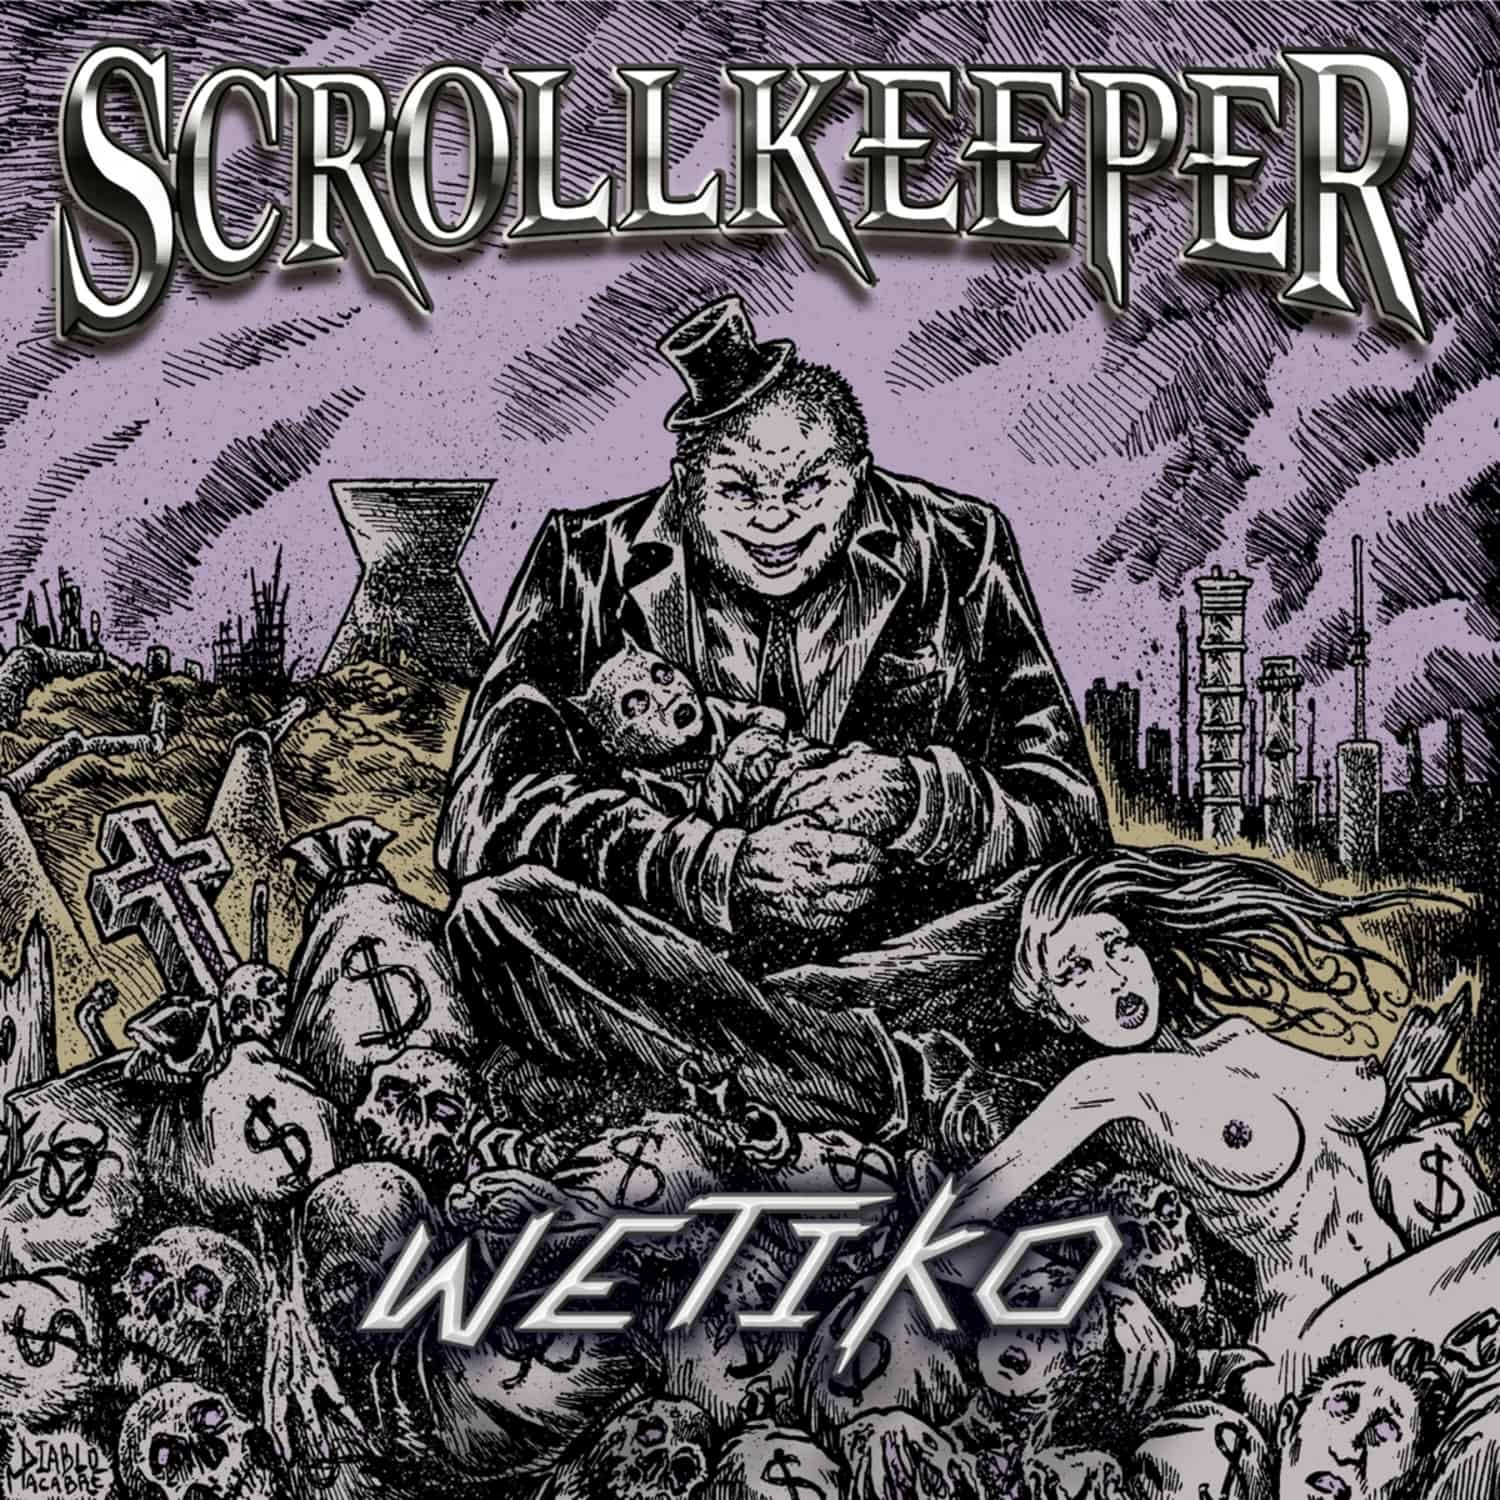 Scrollkeeper - WETIKO 